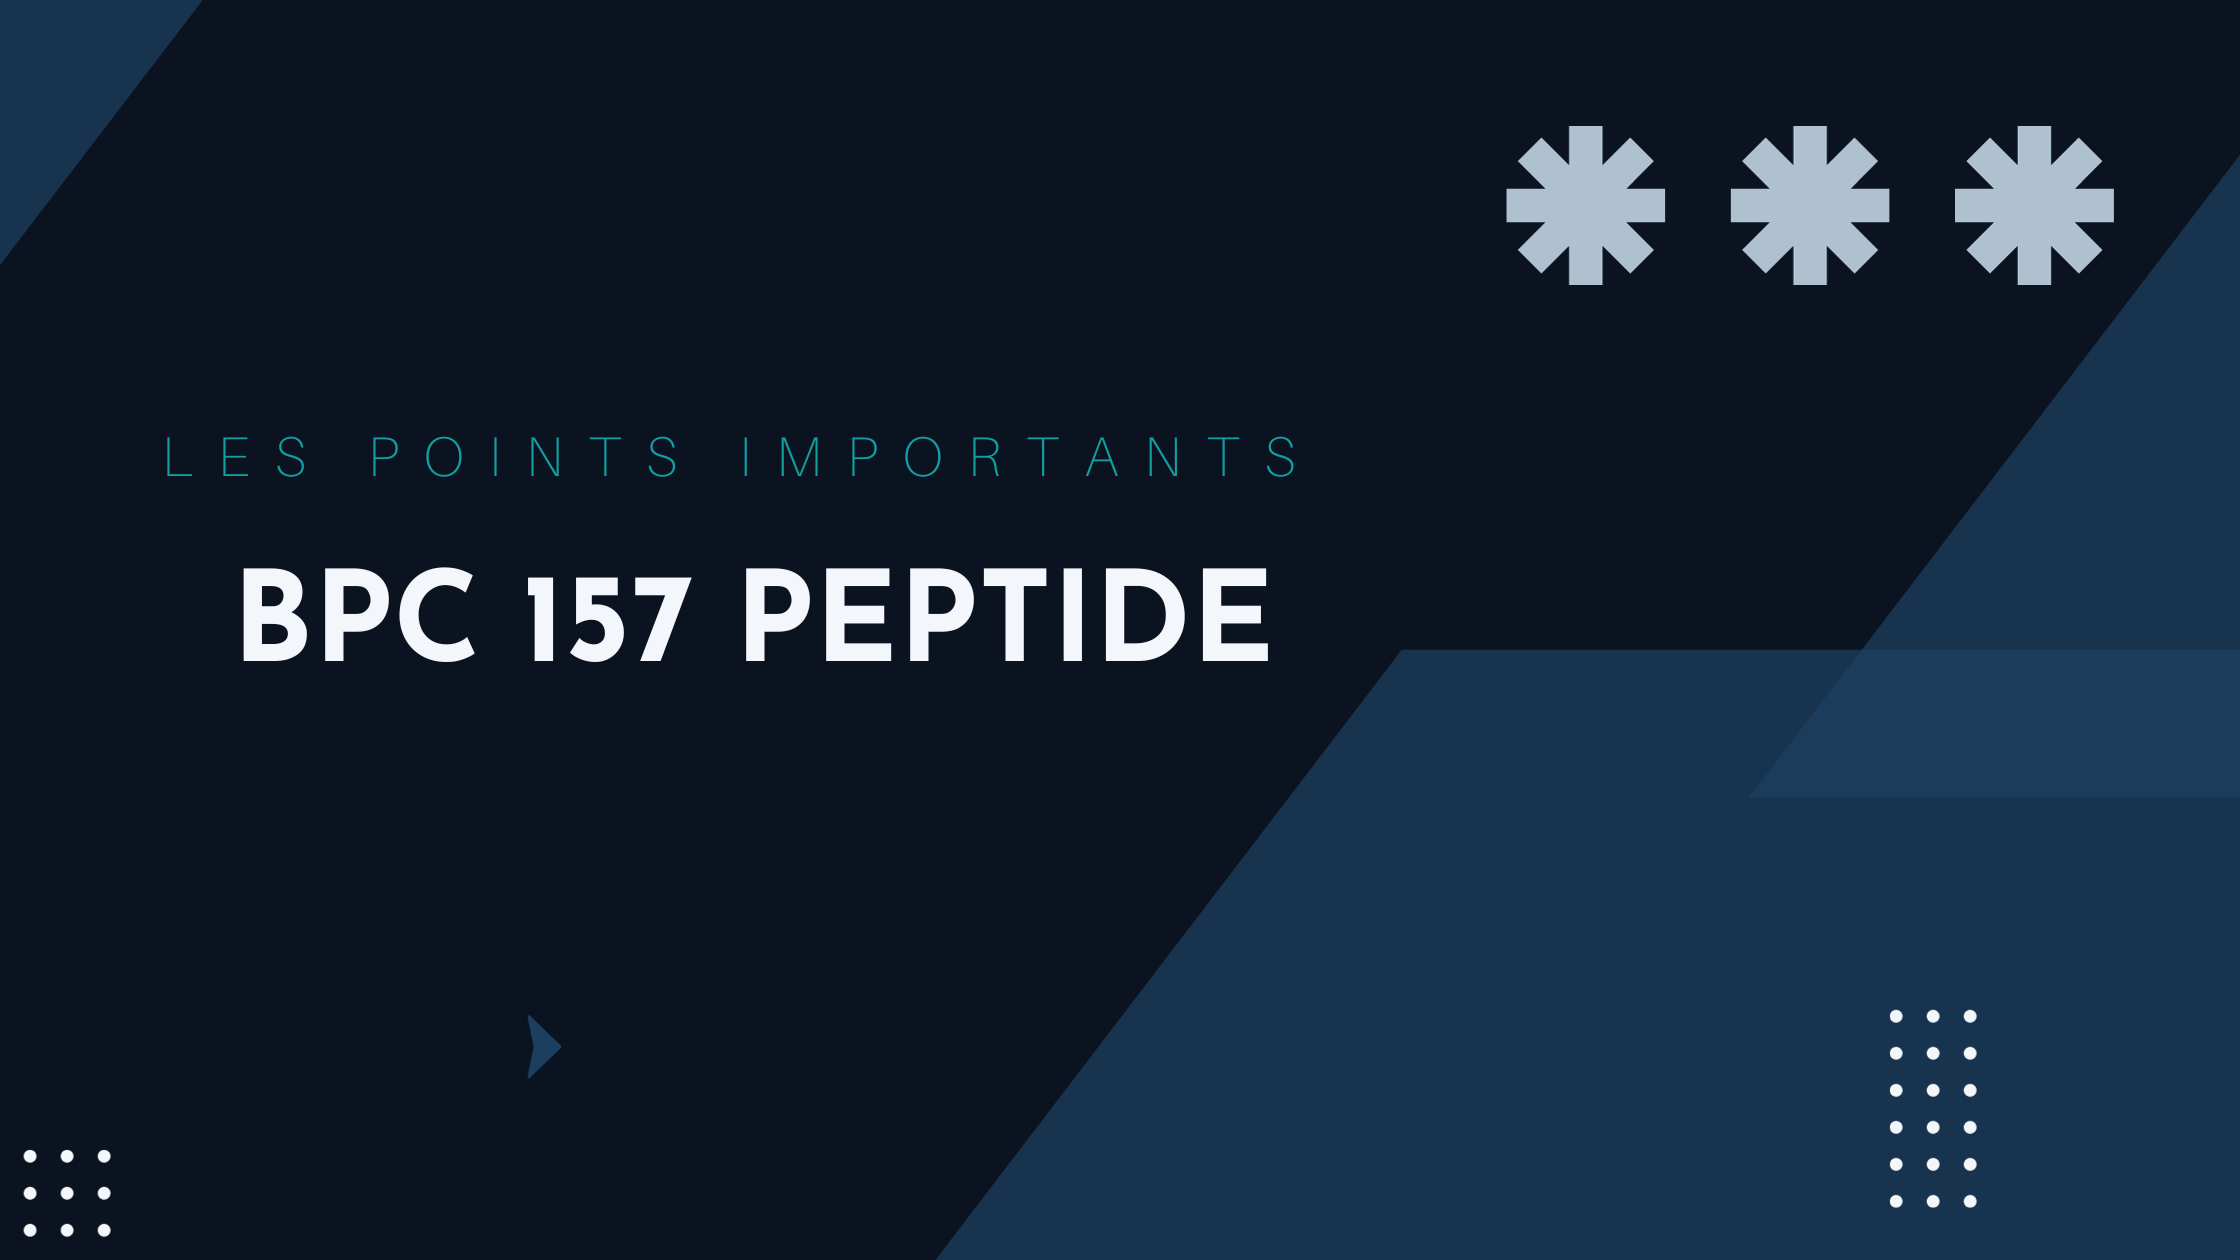 BPC 157 peptide | Les points importants